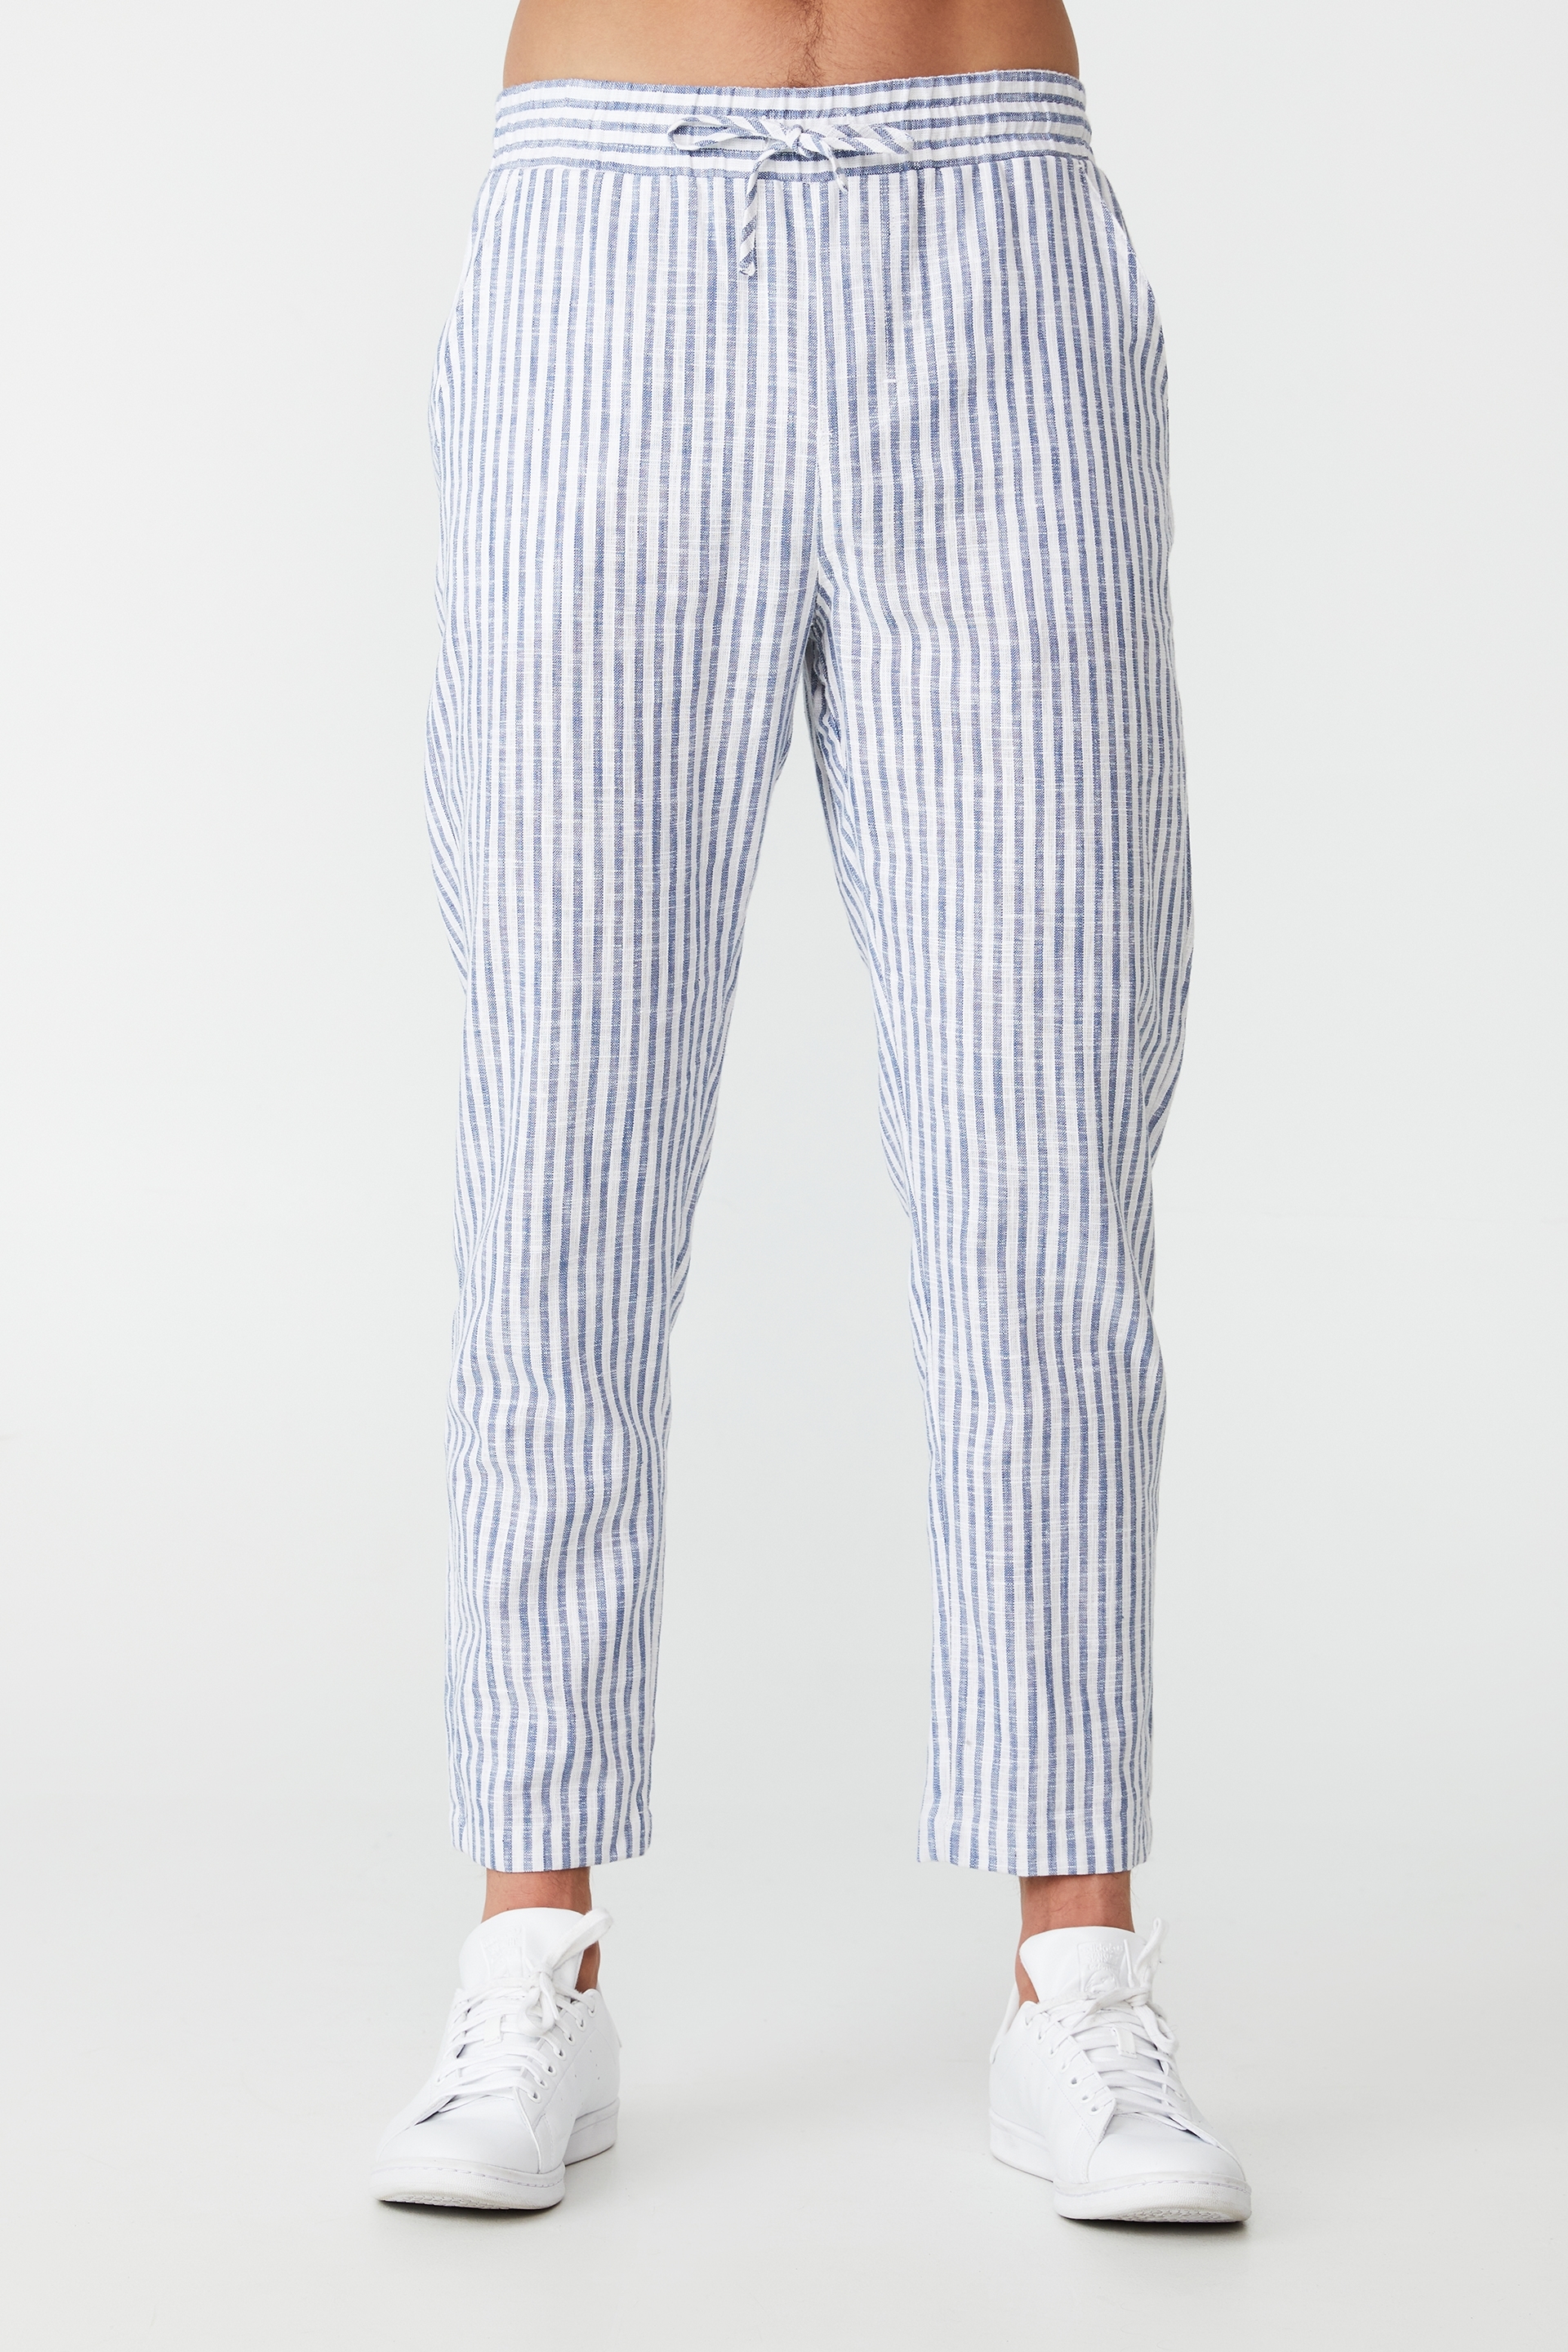 Cotton On Men - East Coast Textured Pant - Navy white striped